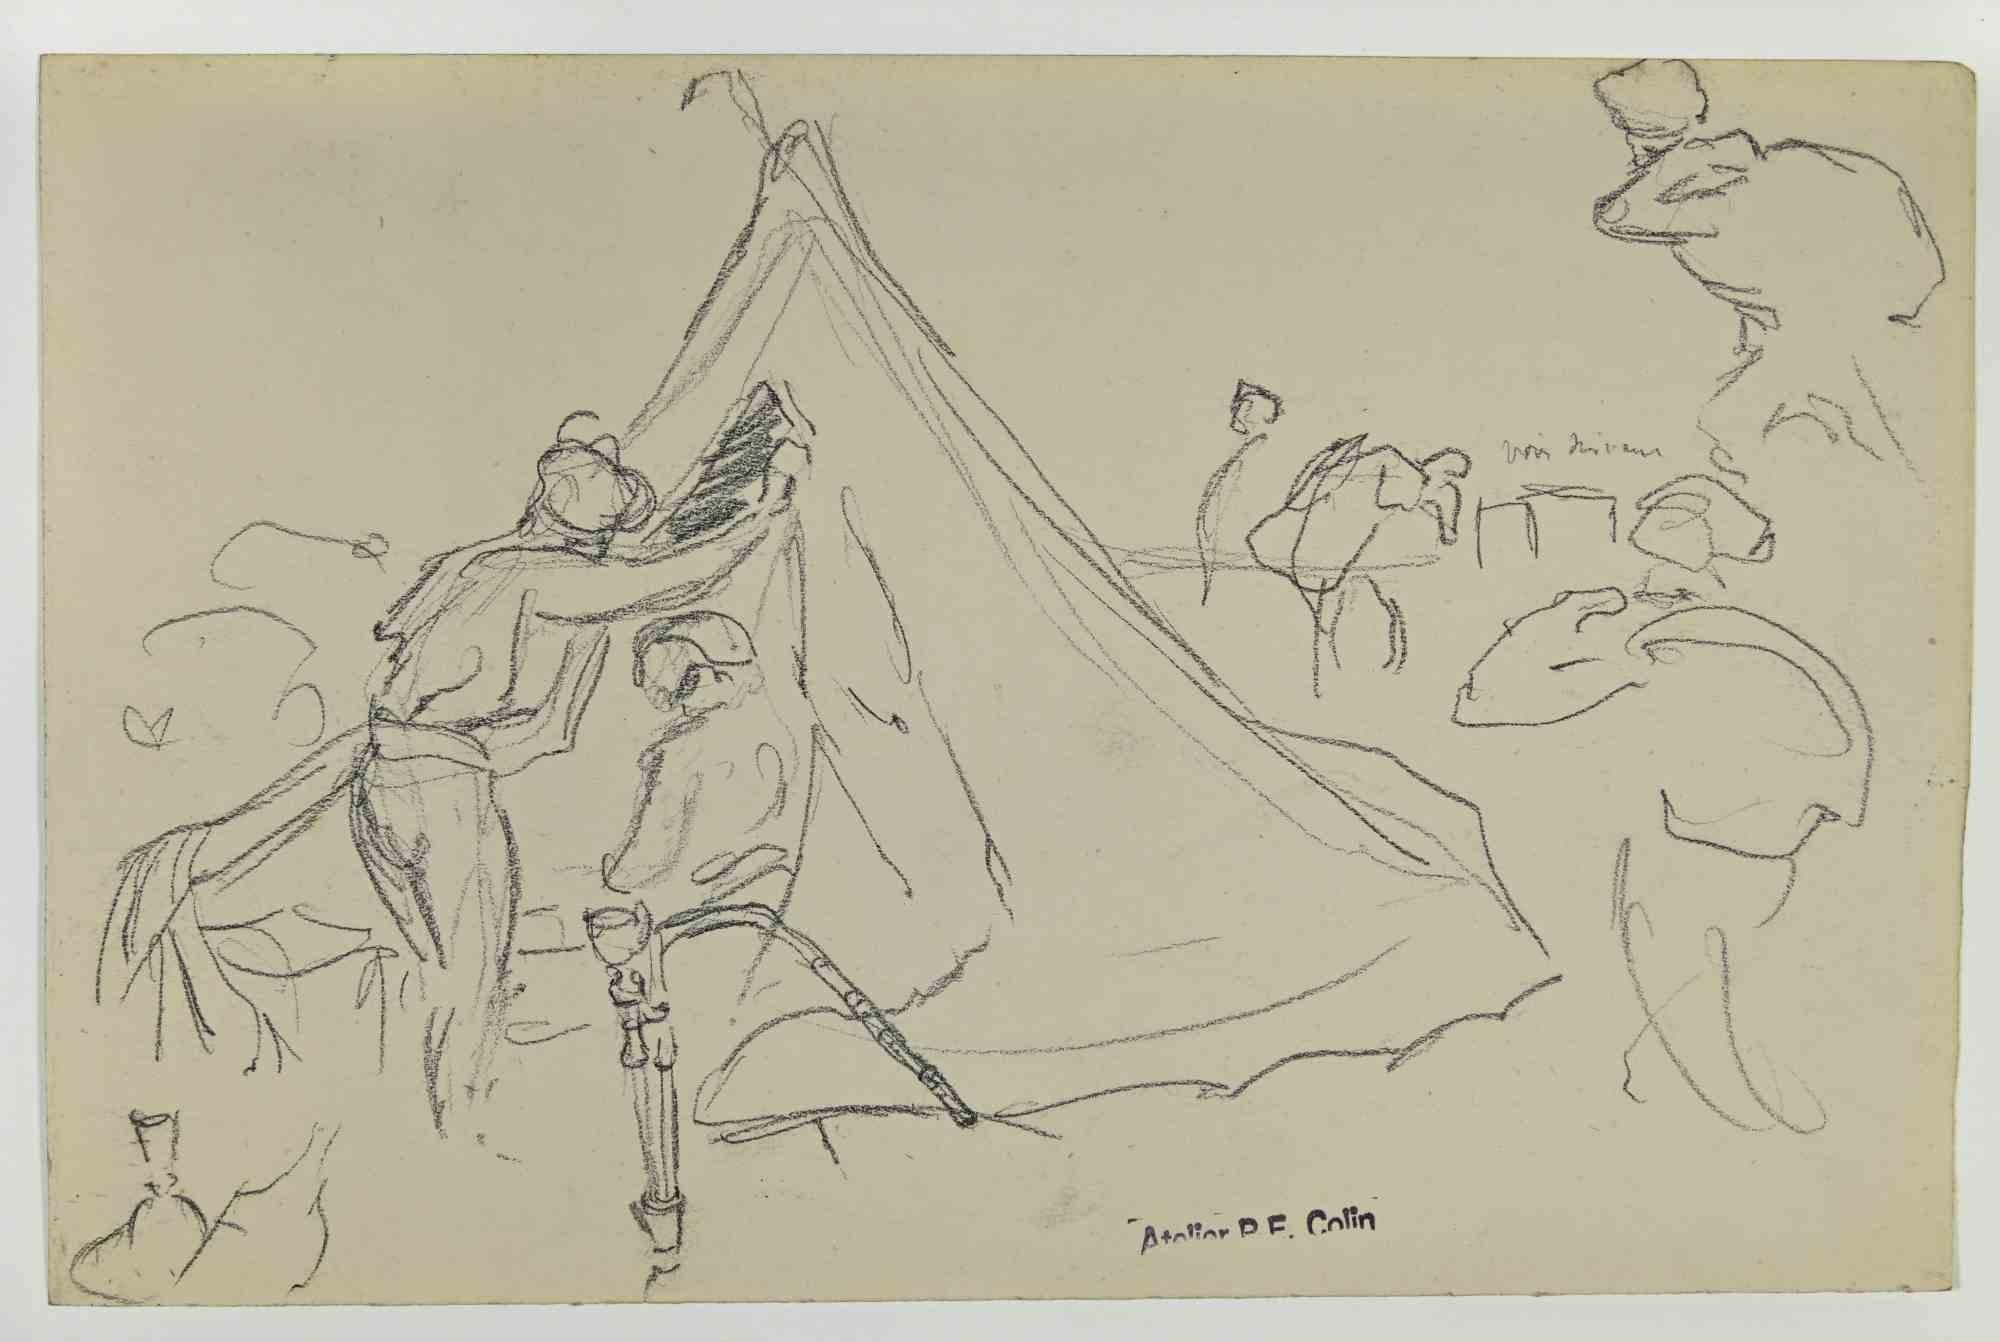 Soldats sous la tente est un dessin réalisé par Paul Emile Colin au début du 20e siècle.

Crayon de carbone sur papier ivoire

Estampillé sur la partie inférieure.

Bon état avec de légères rousseurs.

L'œuvre d'art est réalisée à l'aide de traits